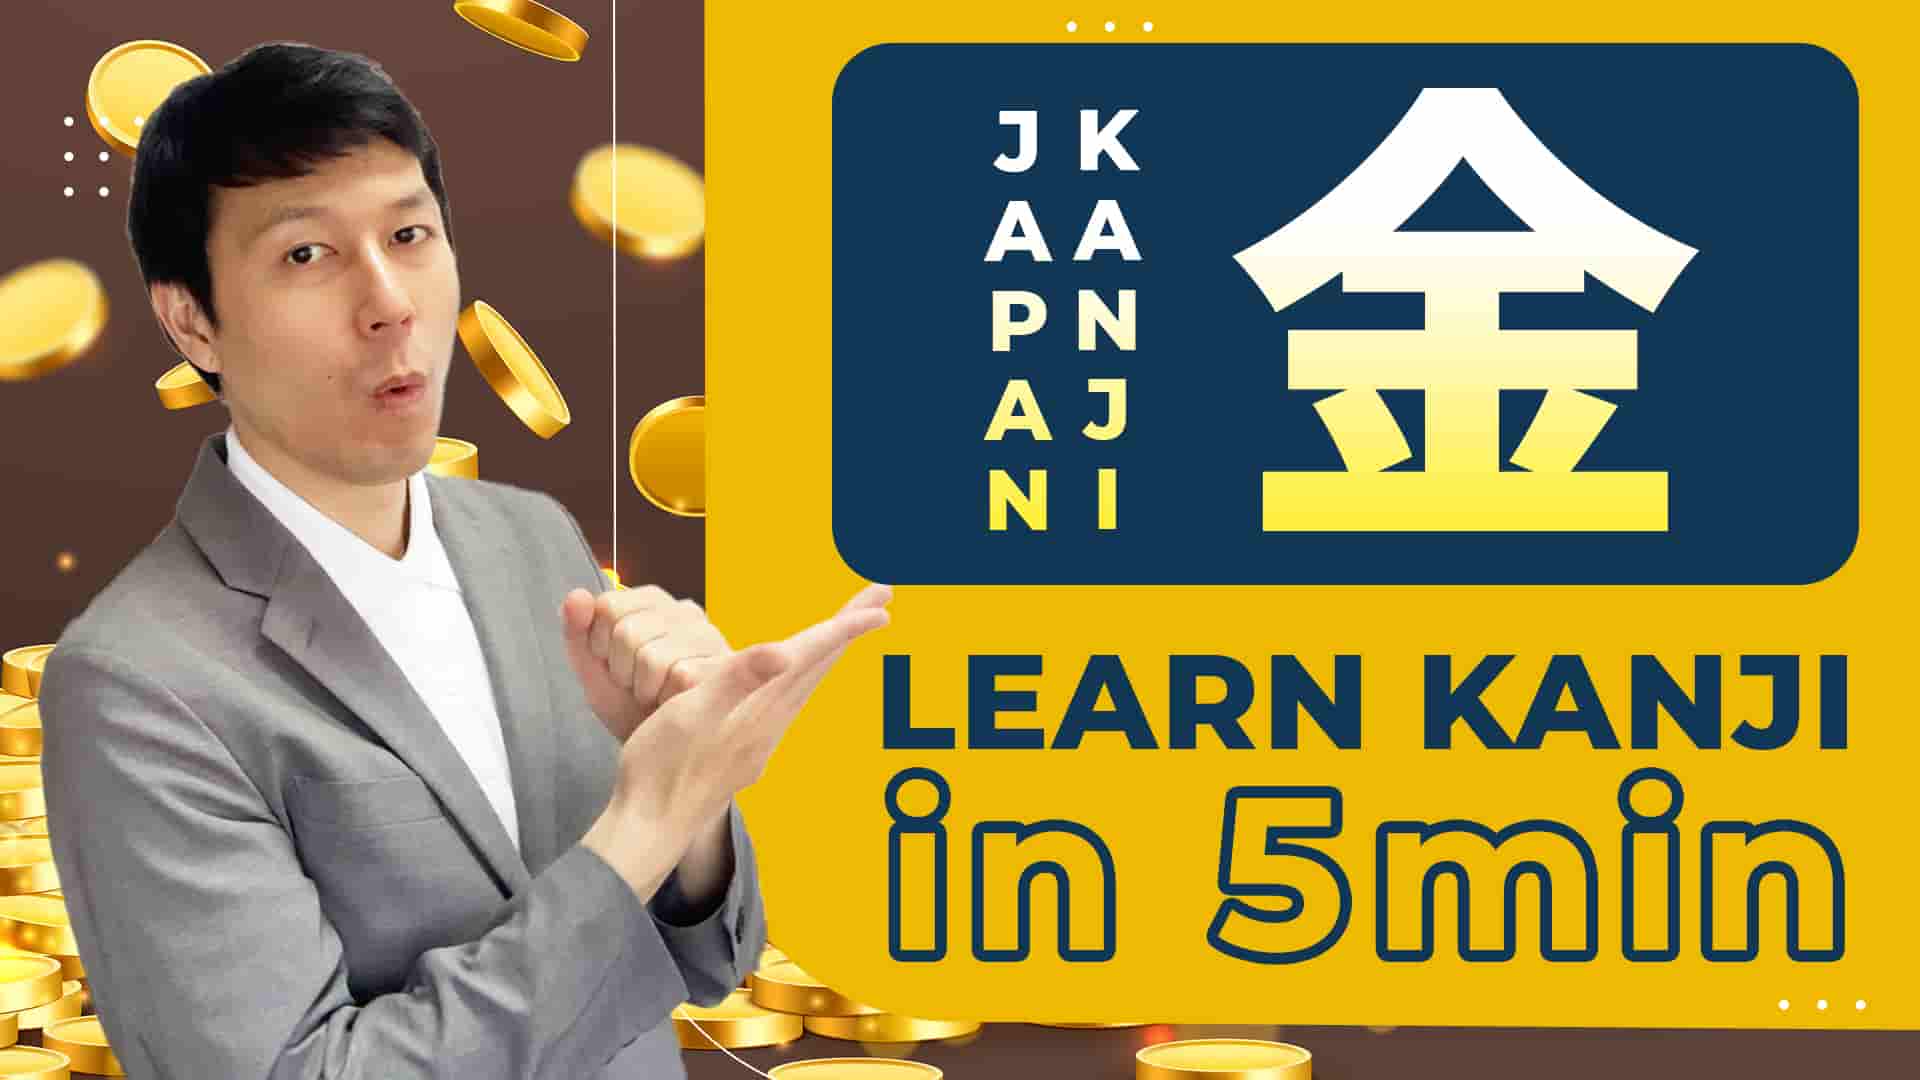 【金】Learning Japanese Kanji（kin, kon, gon, kane, gane, kana/gold, money, Friday）